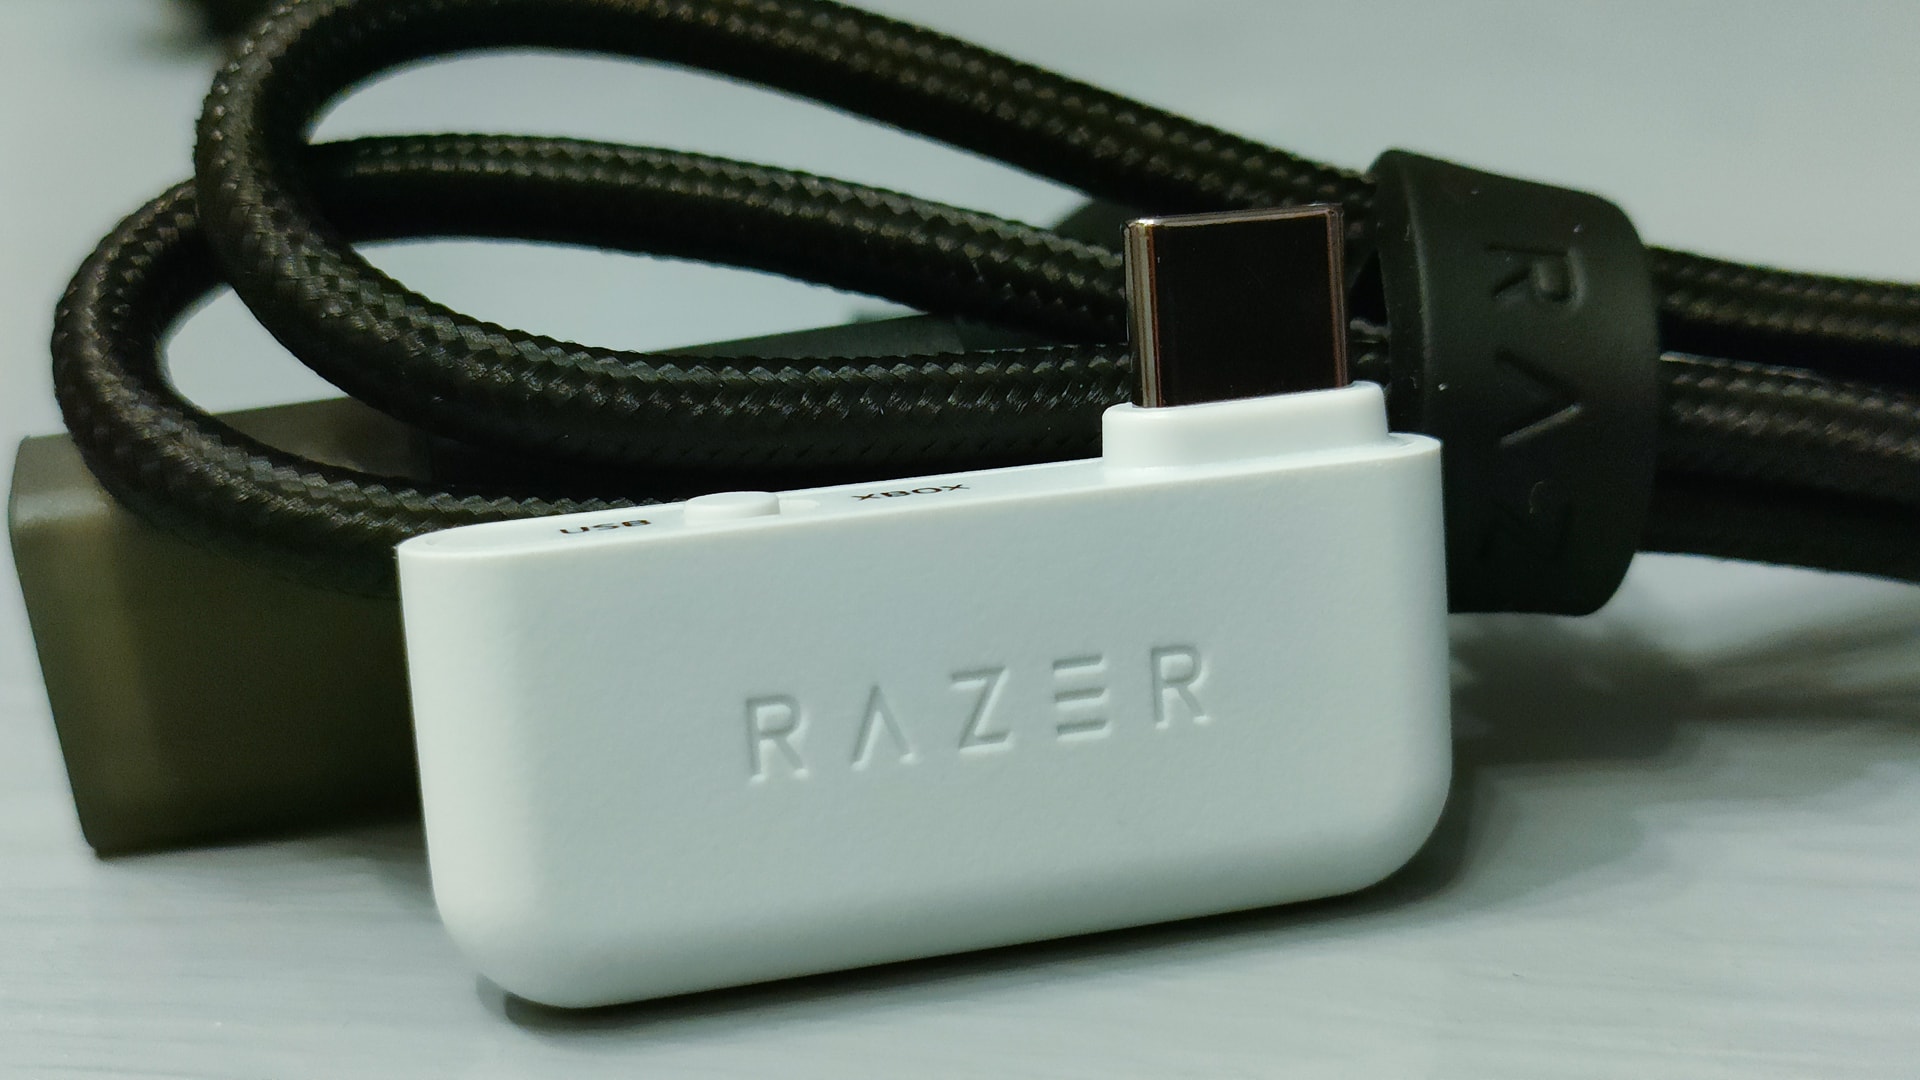 Razer Kaira HyperSpeed for Xbox